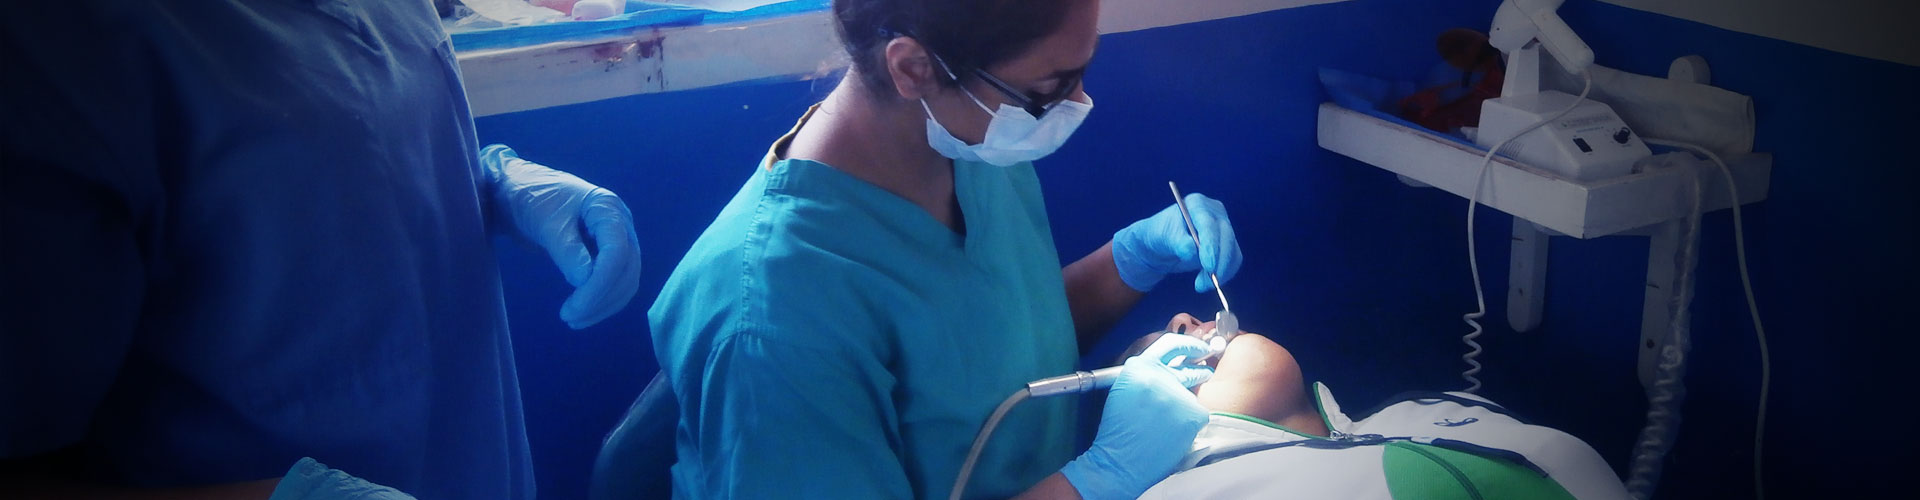 Tirocinio dentale elettivo in Perù